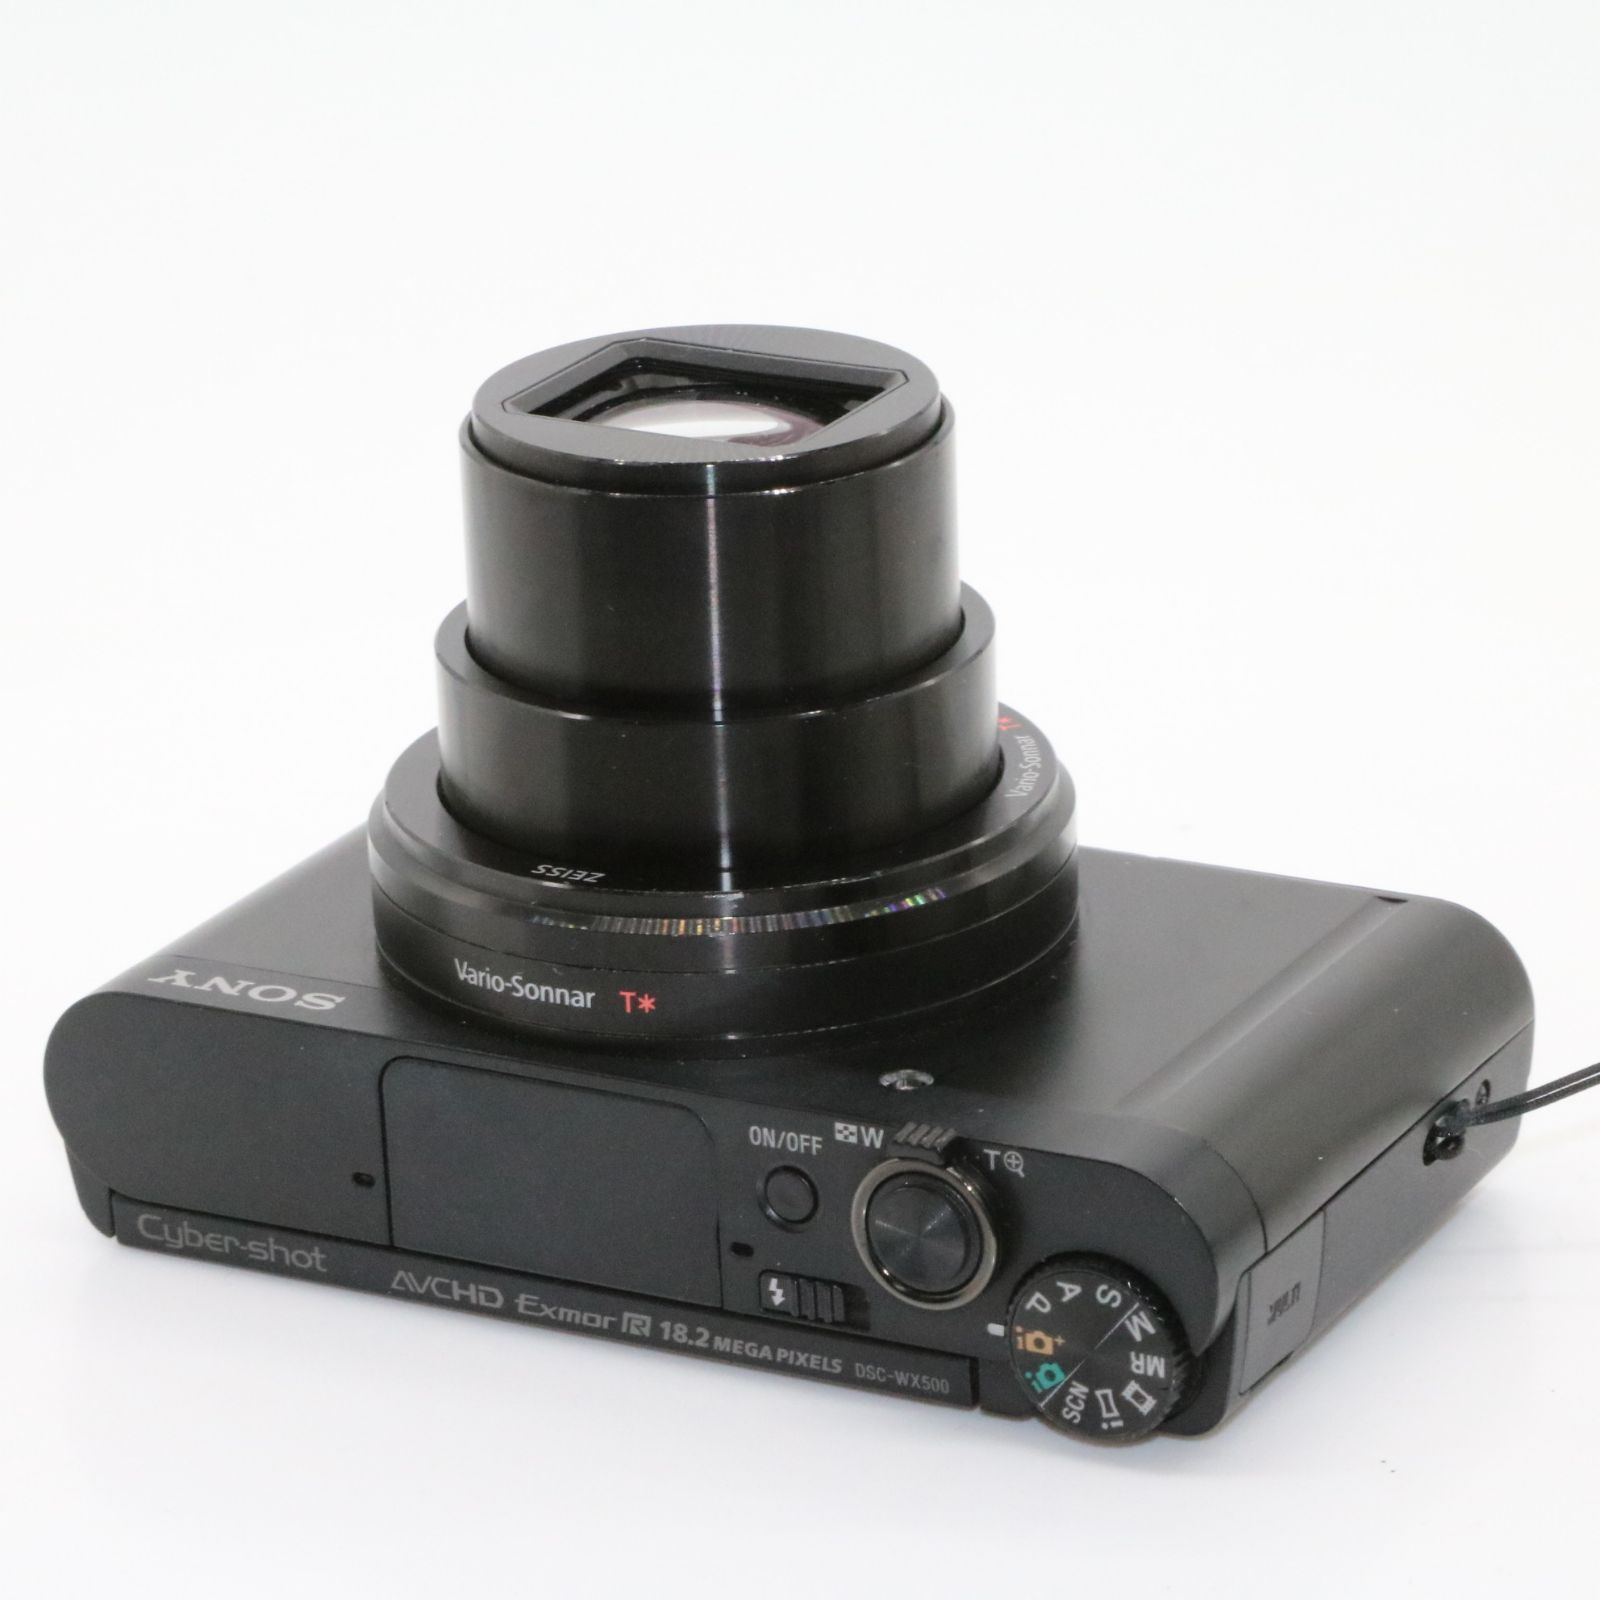 良品 予備バッテリー付き SONY ソニー コンパクトデジタルカメラ Cyber-shot DSC-WX500 ブラック  光学ズーム30倍(24-720mm) 180度可動式液晶モニター DSC-WX500 BC